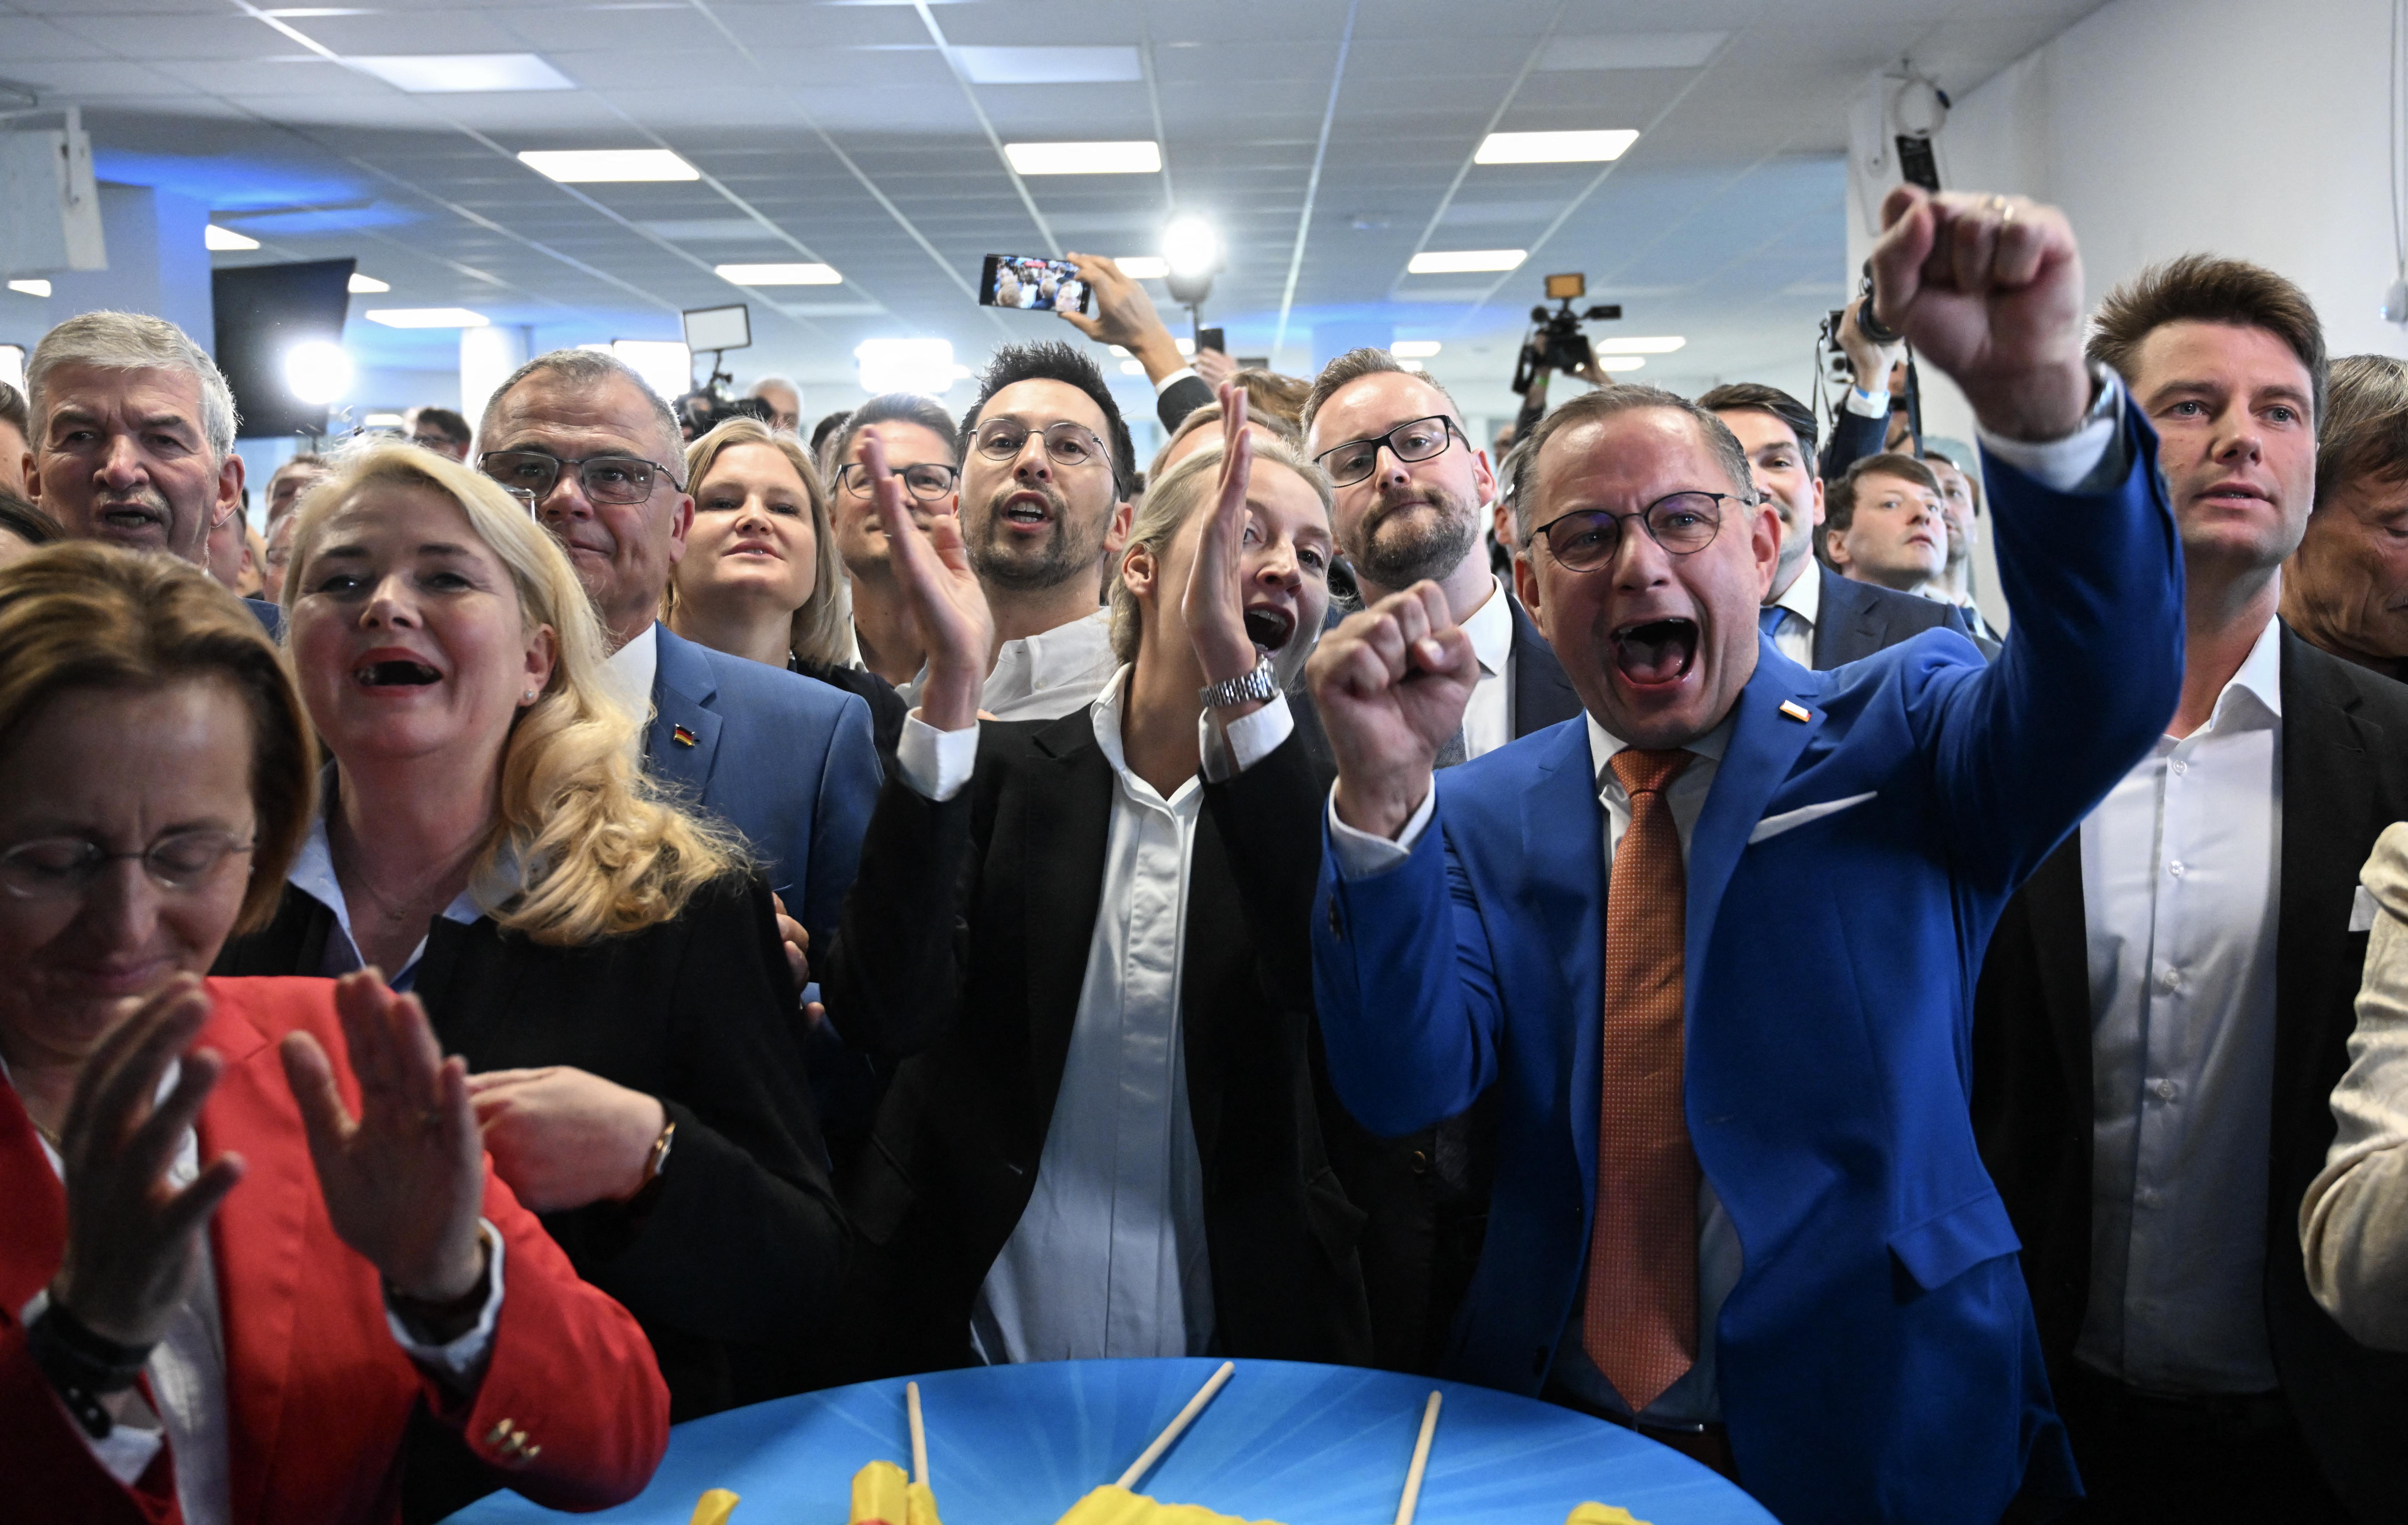 CDU/CSU coalition triumphs as far-right AfD gains momentum